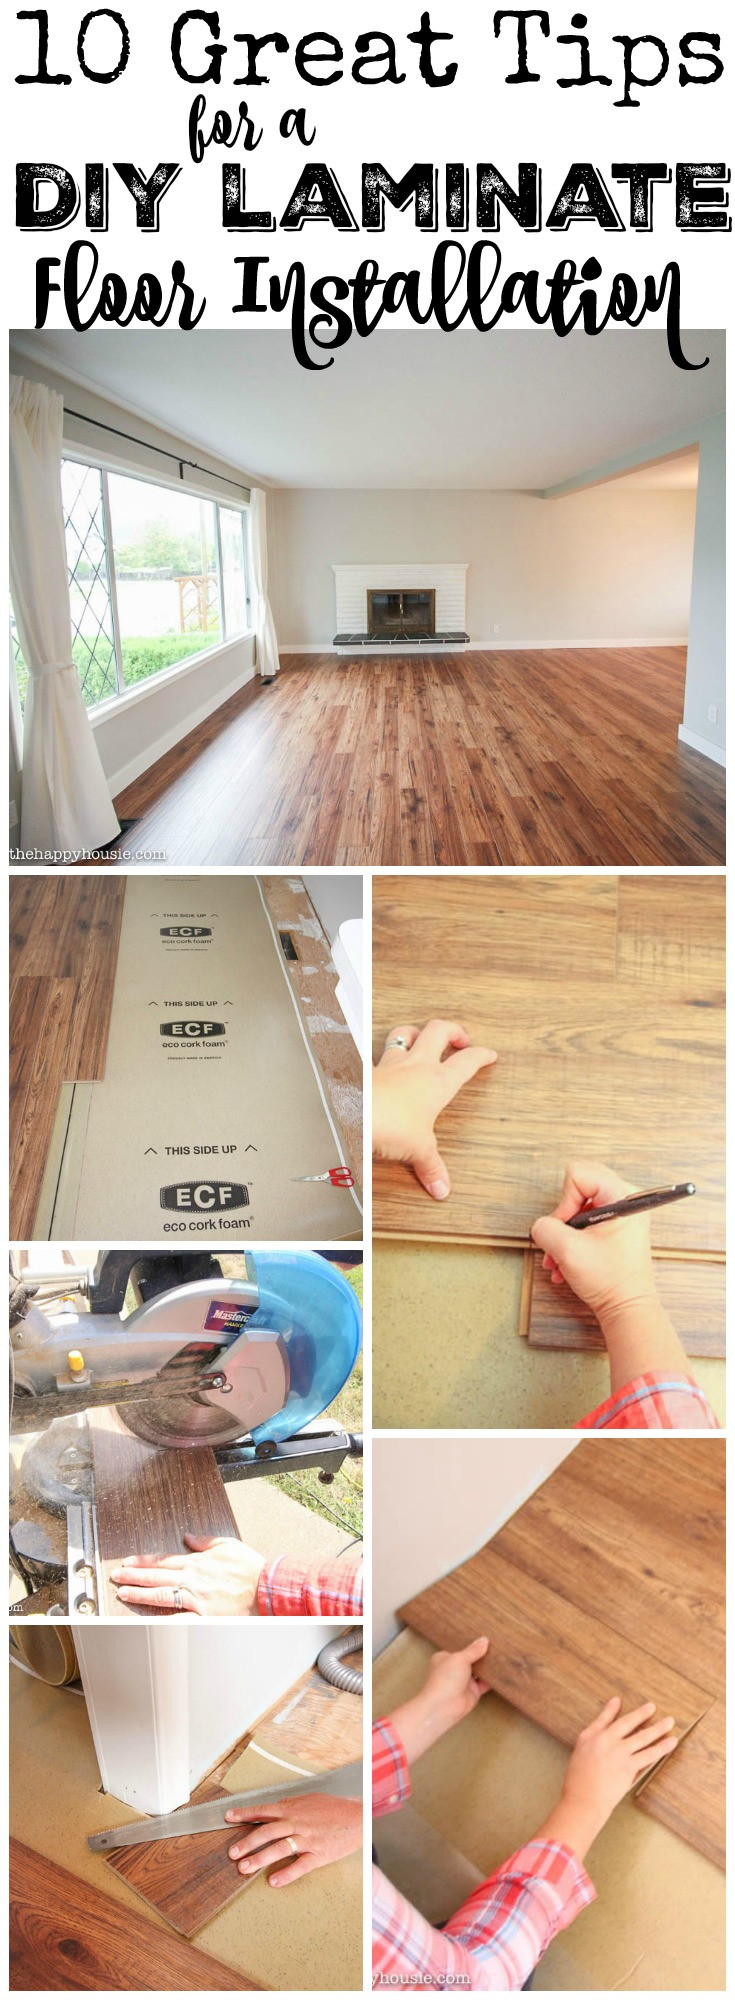 DIY Laminated Wooden Flooring
 10 Great Tips for a DIY Laminate Flooring Installation